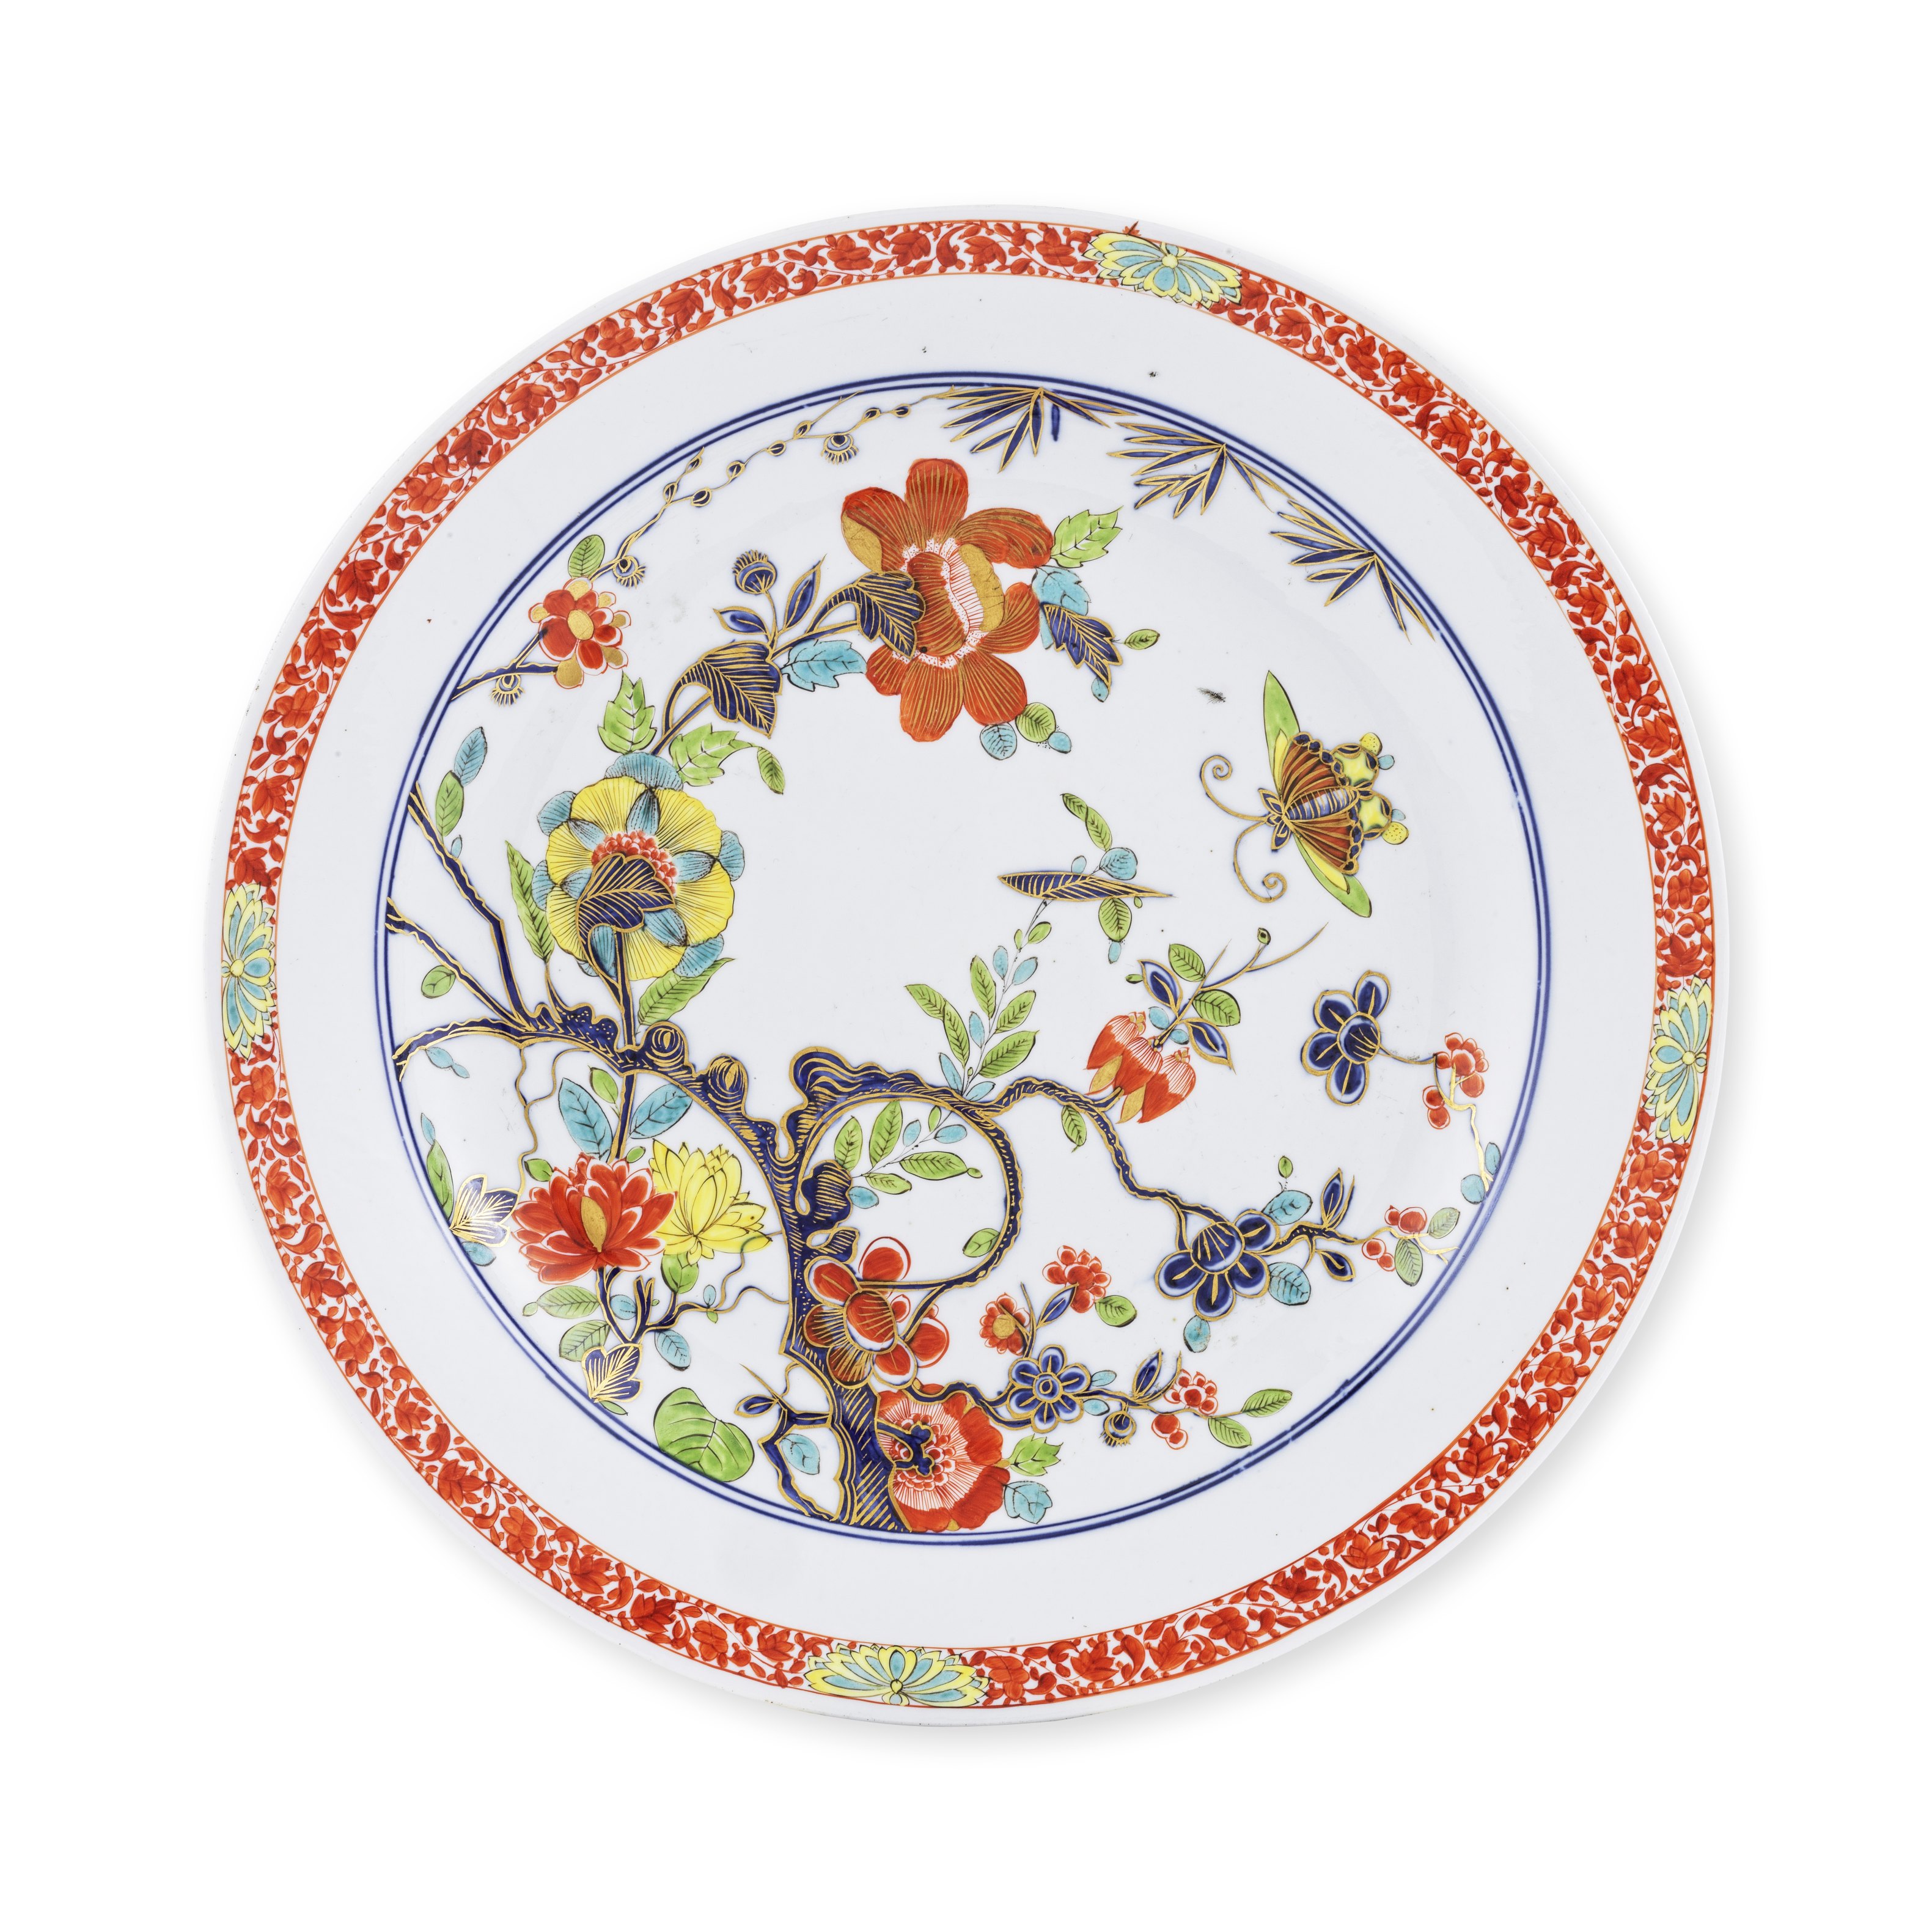 Grand et rare plat en porcelaine de Meissen, circa 1735A rare Meissen large dish, circa 1735